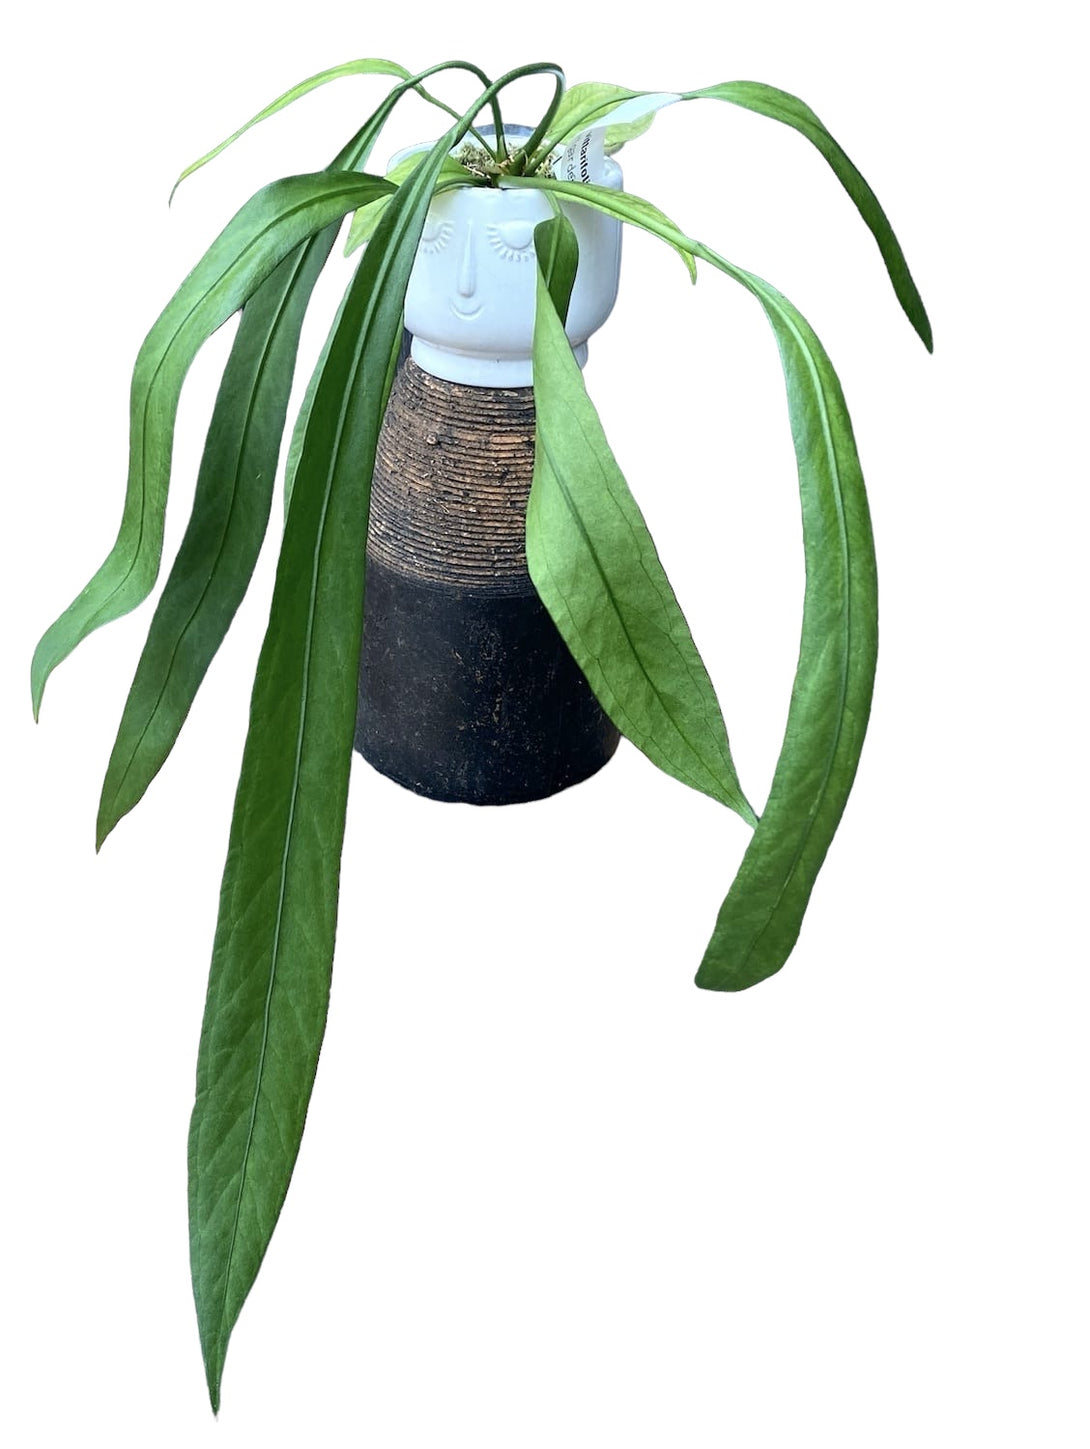 Anthurium vittarifolium